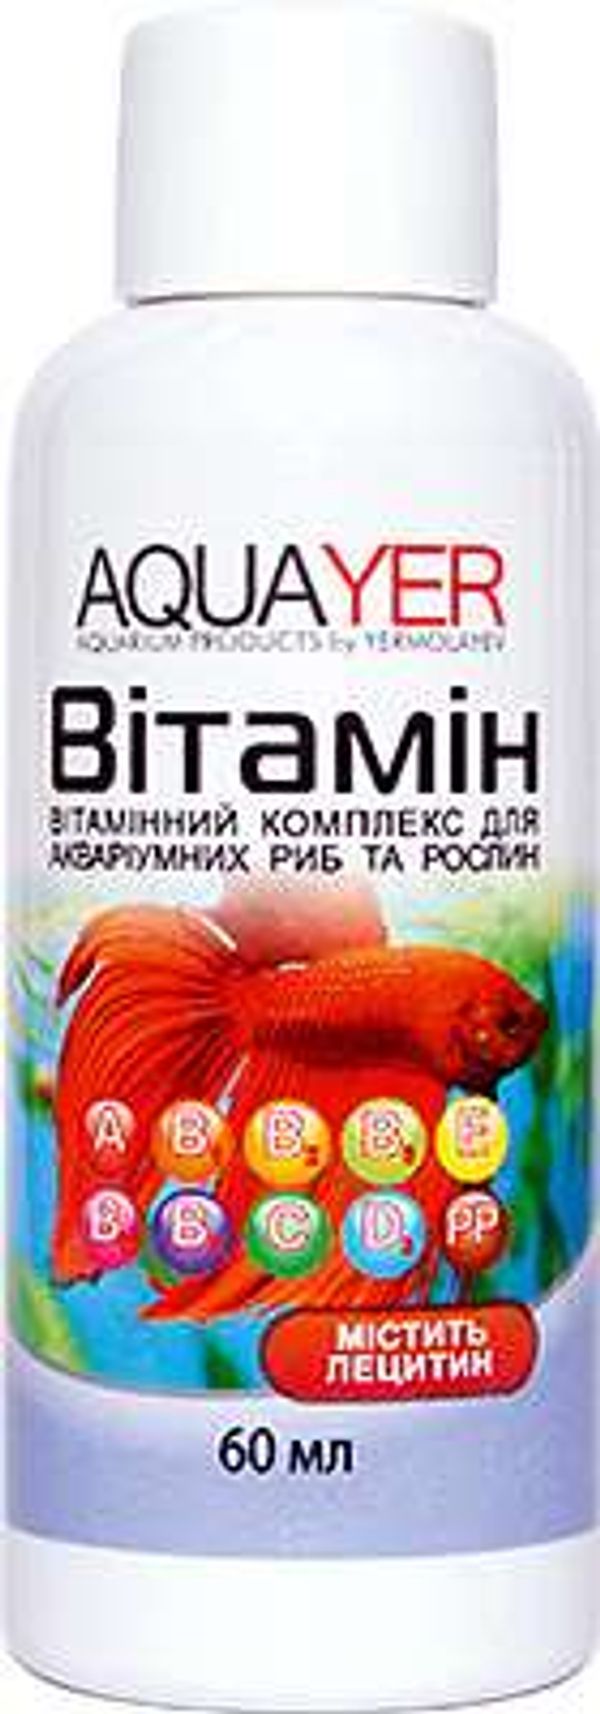 Витамин, для аквариумных рыб